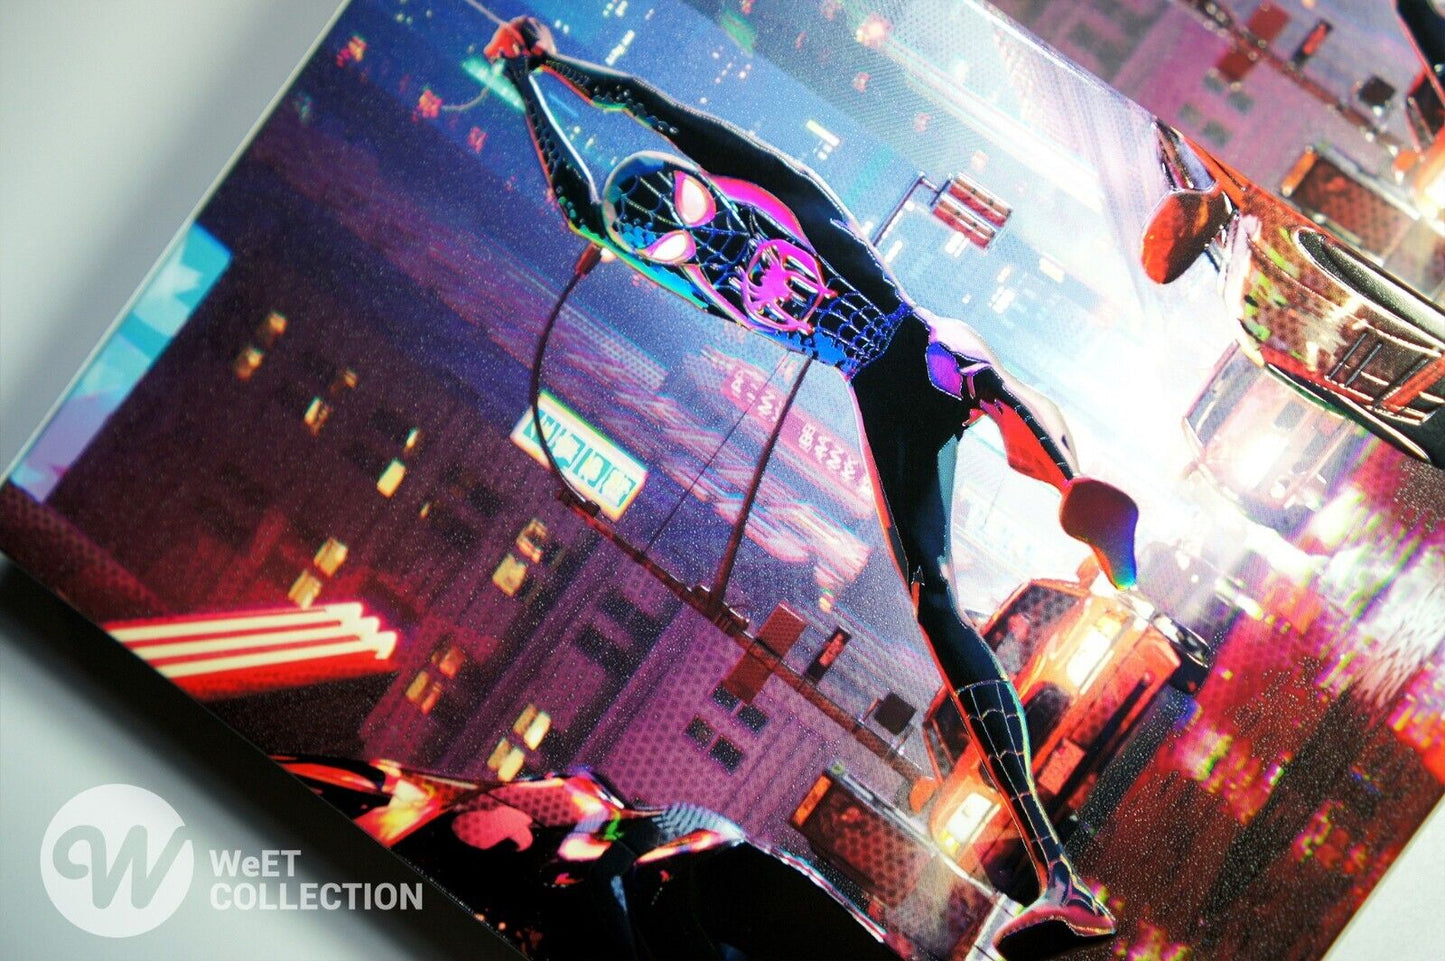 Spider-Man: Into the Spider-Verse SteelBook 4K Blu-ray Steelbook WeET Collection Exclusive #16 Lenticular Slip B1